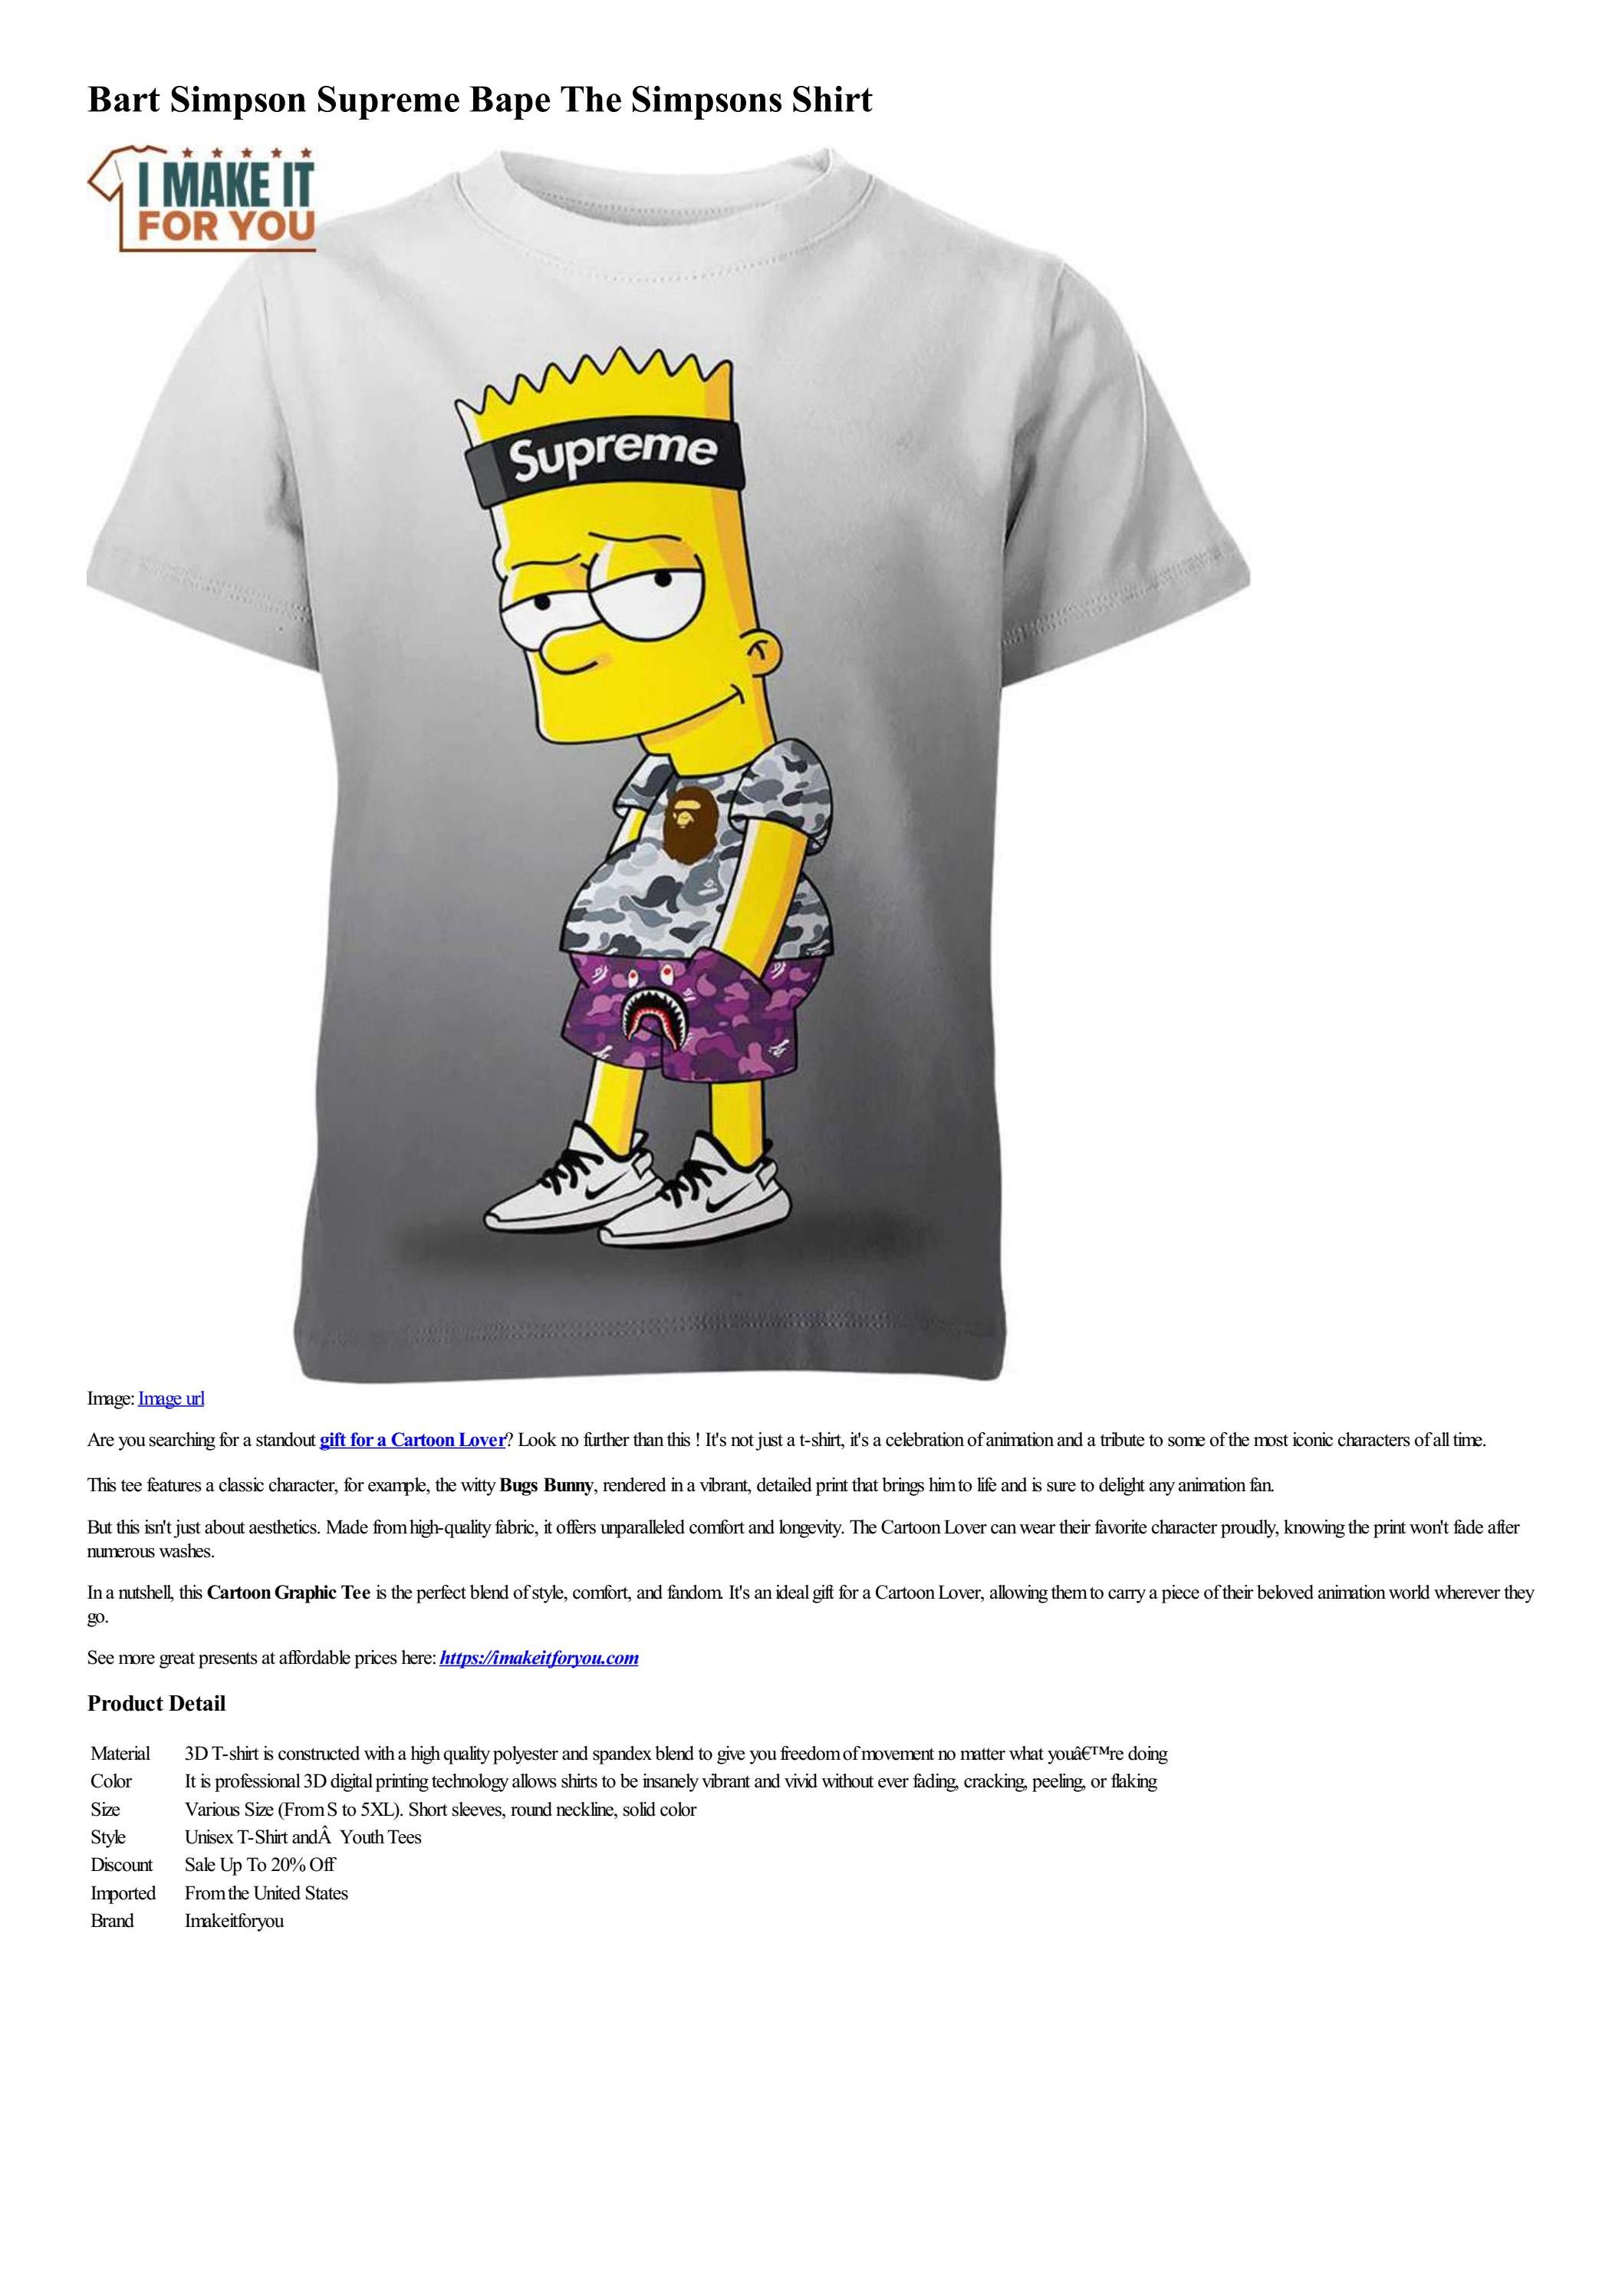 Bart simpson supreme bape the simpsons shirt by imakeitforyou